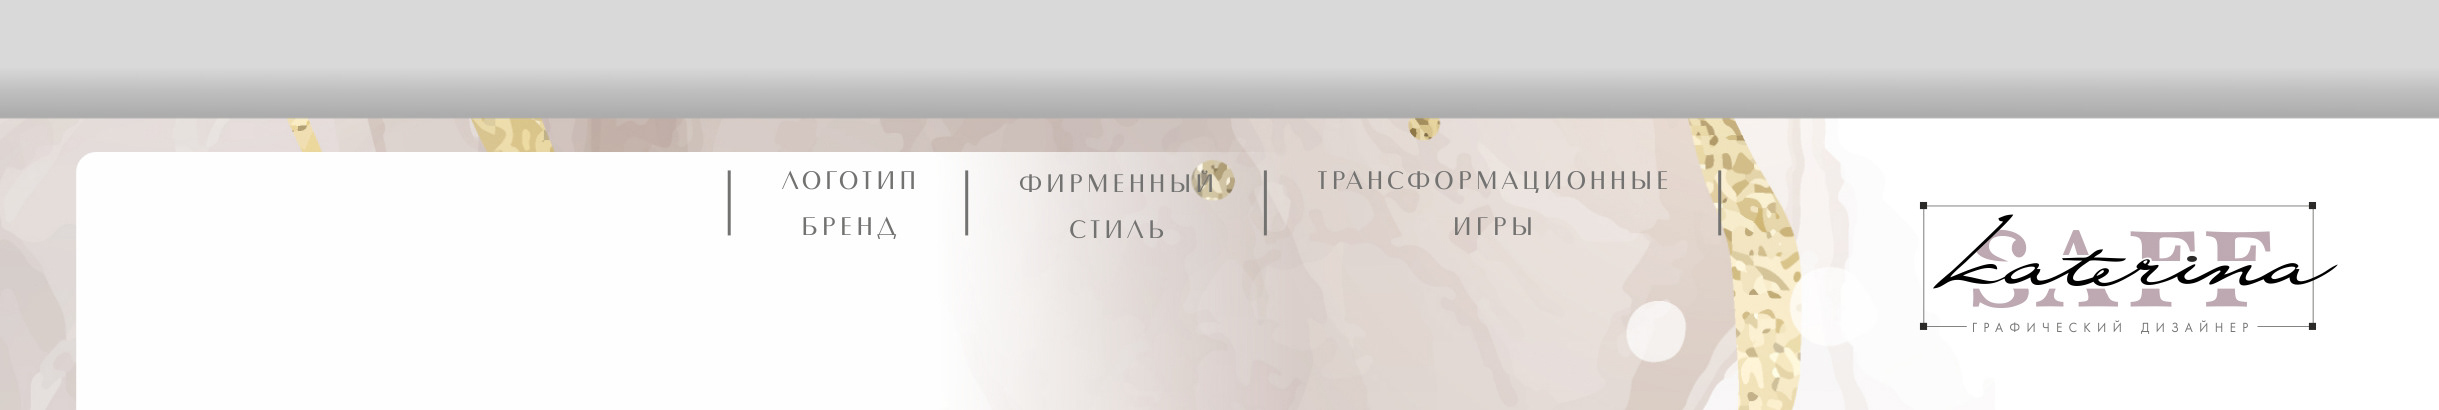 Екатерина Сафронова's profile banner